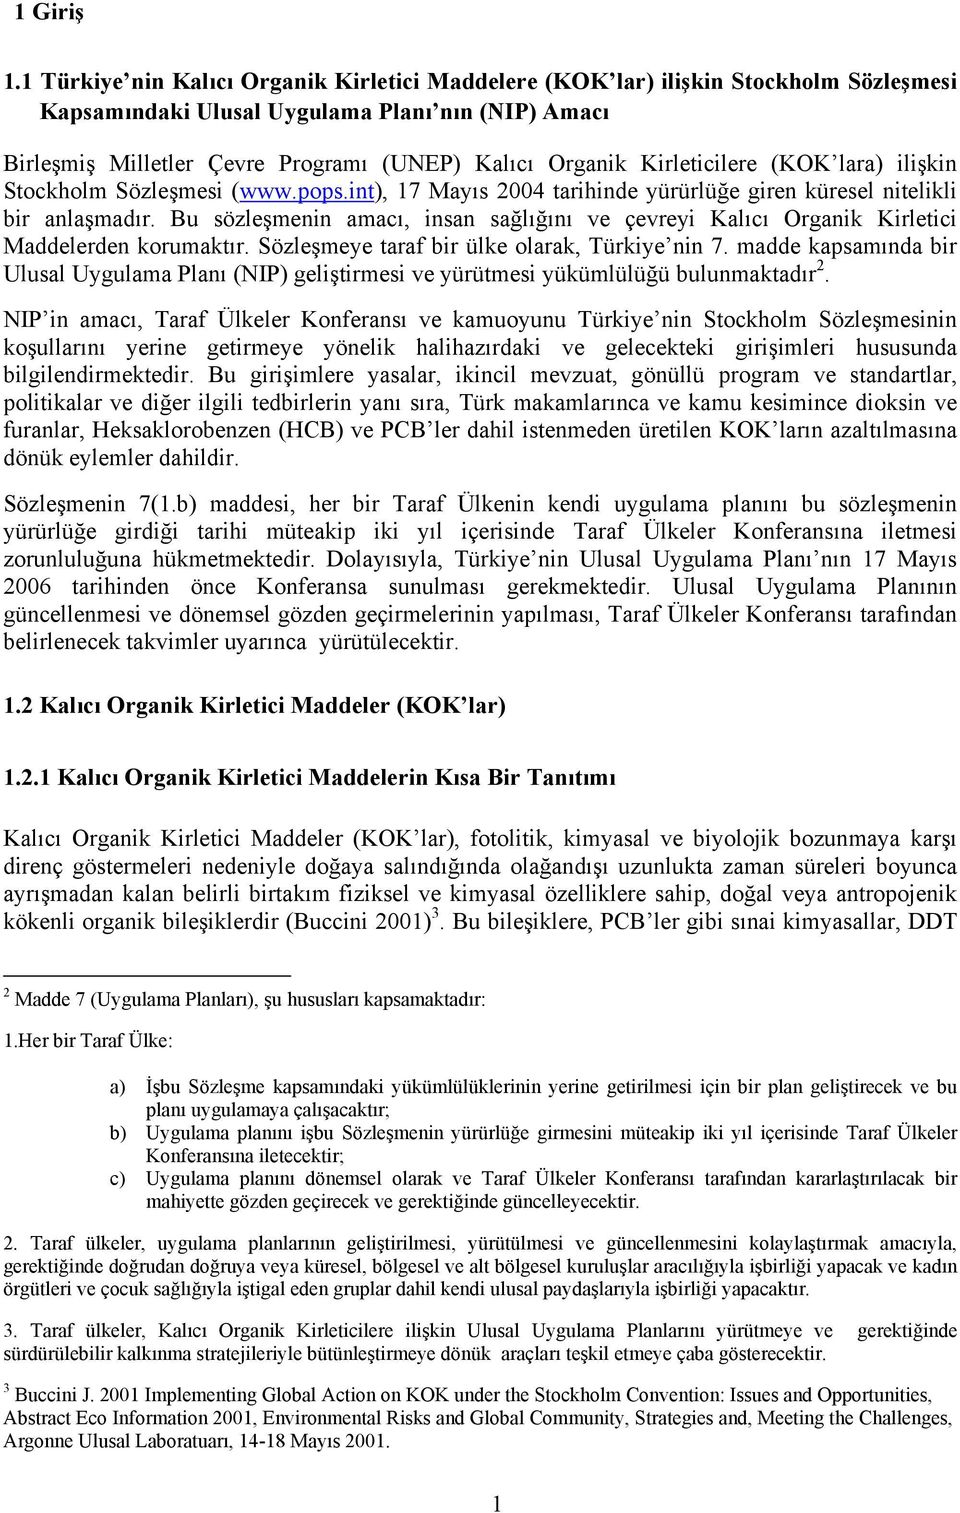 Kirleticilere (KOK lara) ilişkin Stockholm Sözleşmesi (www.pops.int), 17 Mayıs 2004 tarihinde yürürlüğe giren küresel nitelikli bir anlaşmadır.